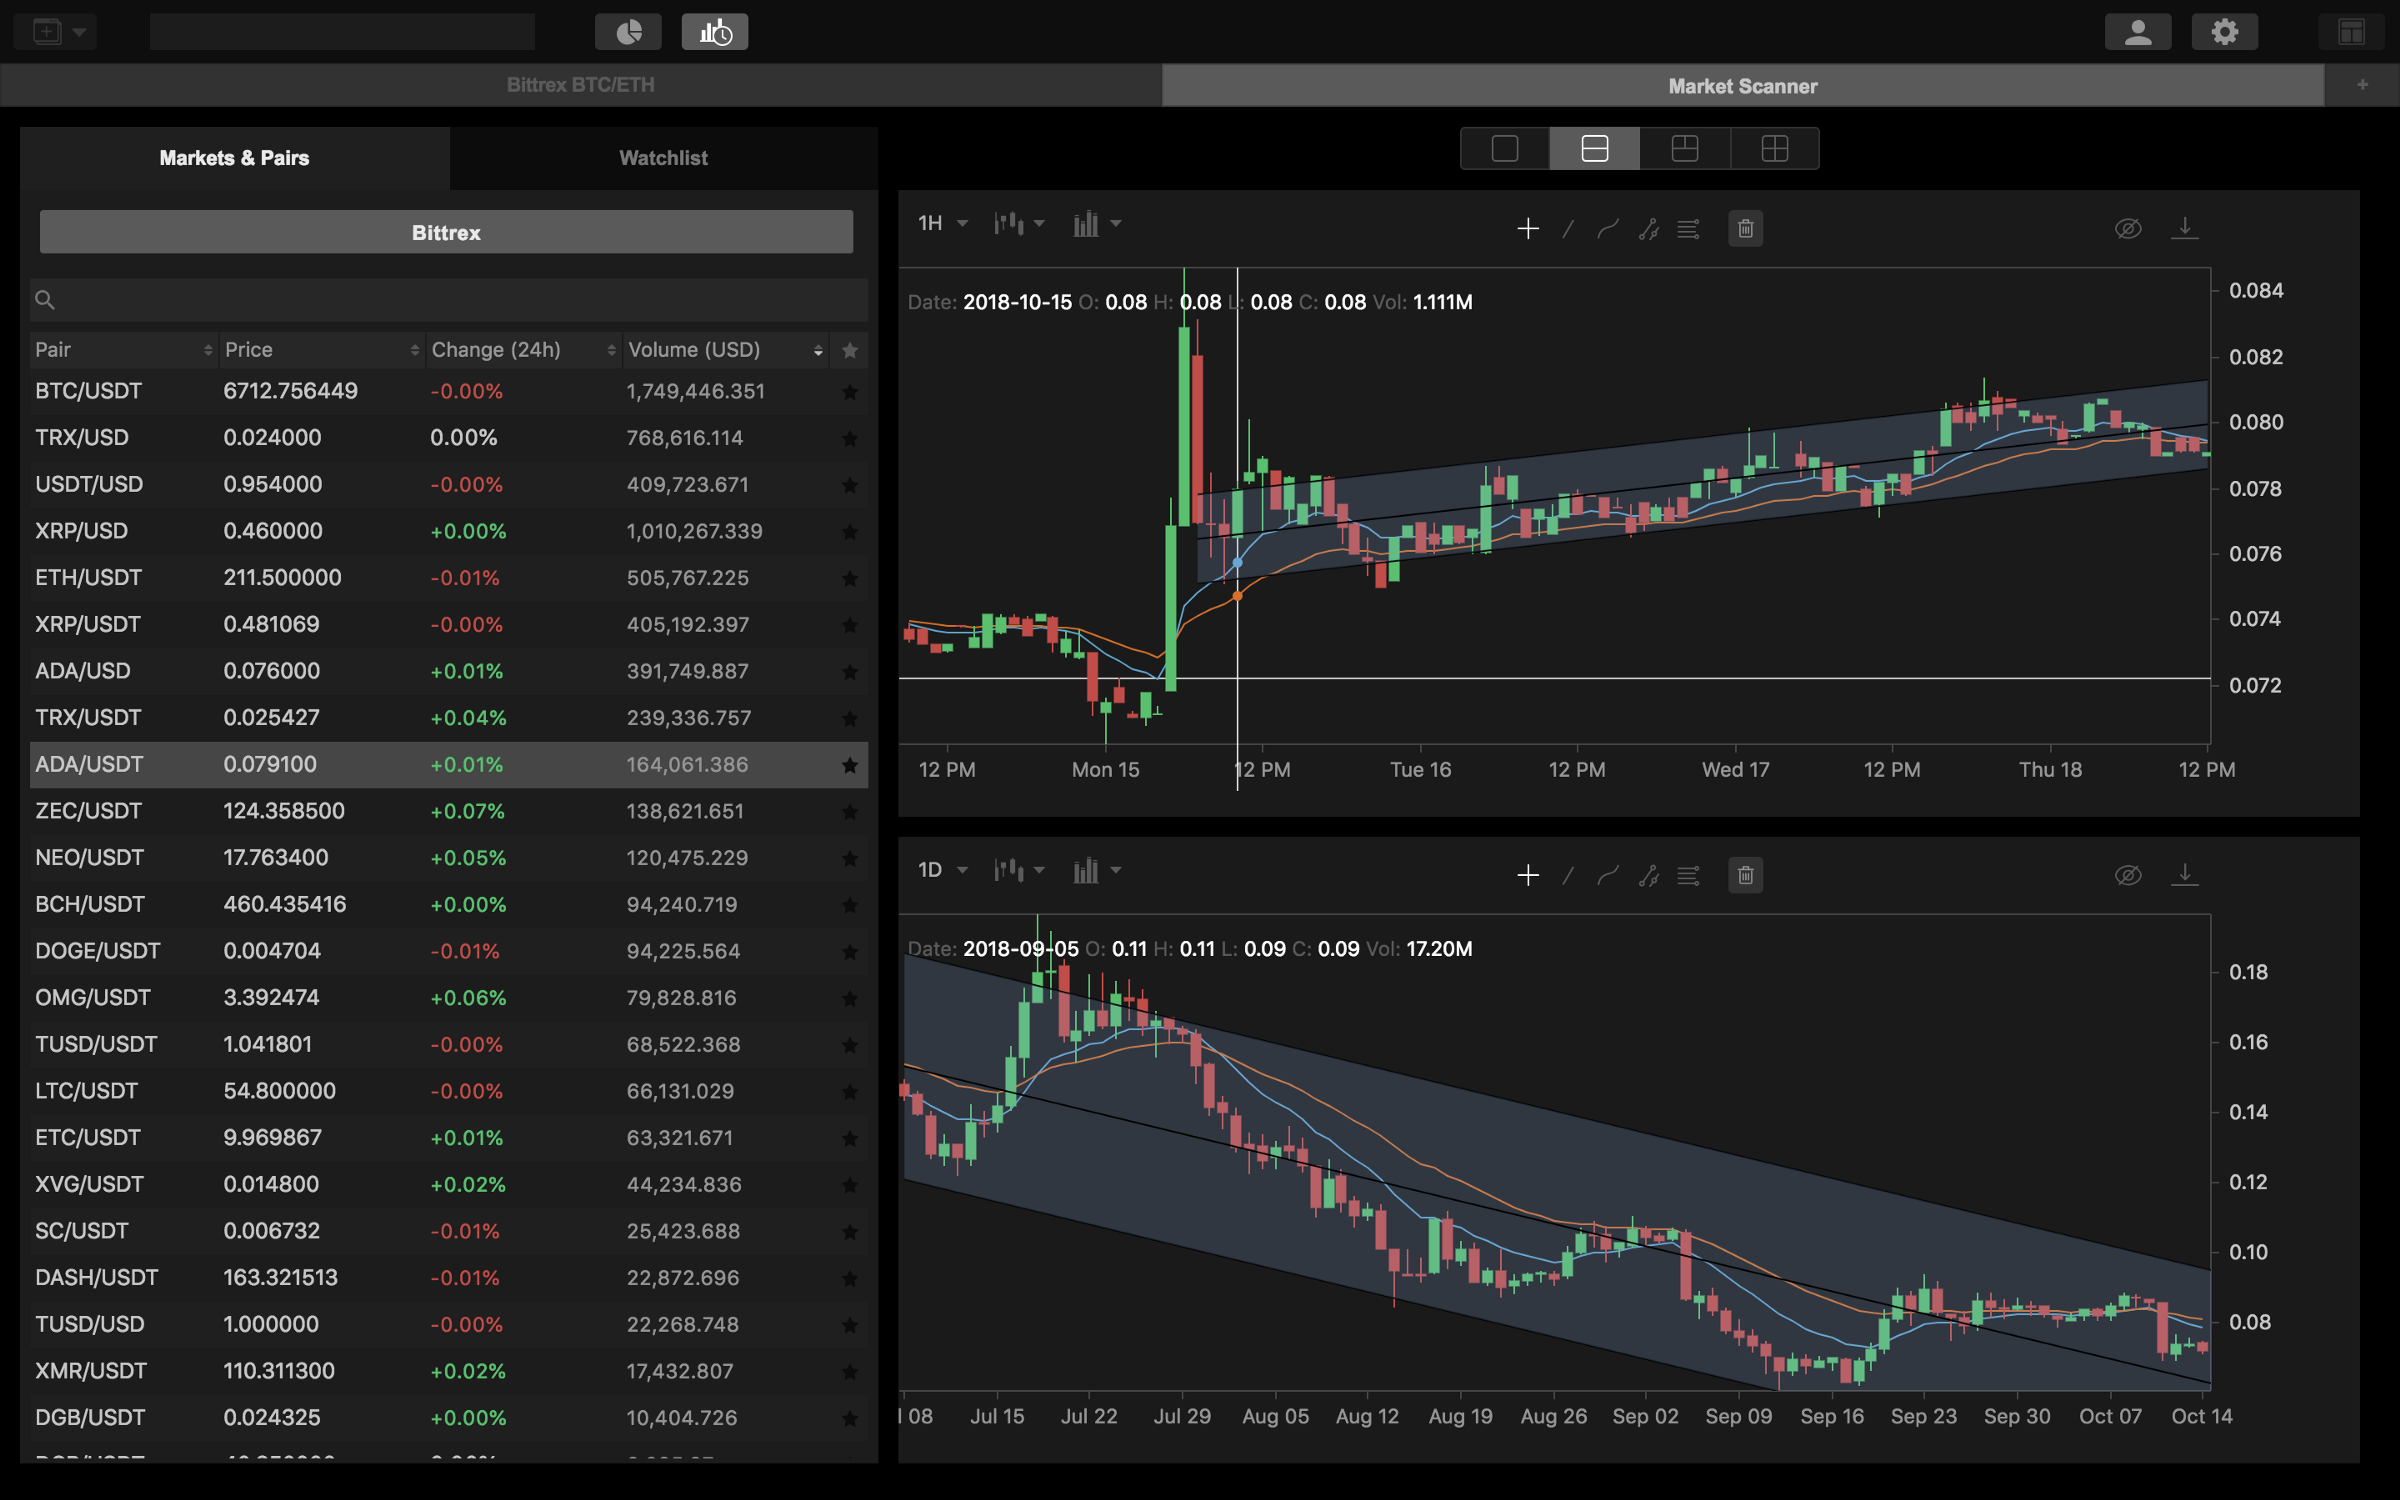 Crypto Trading Charts